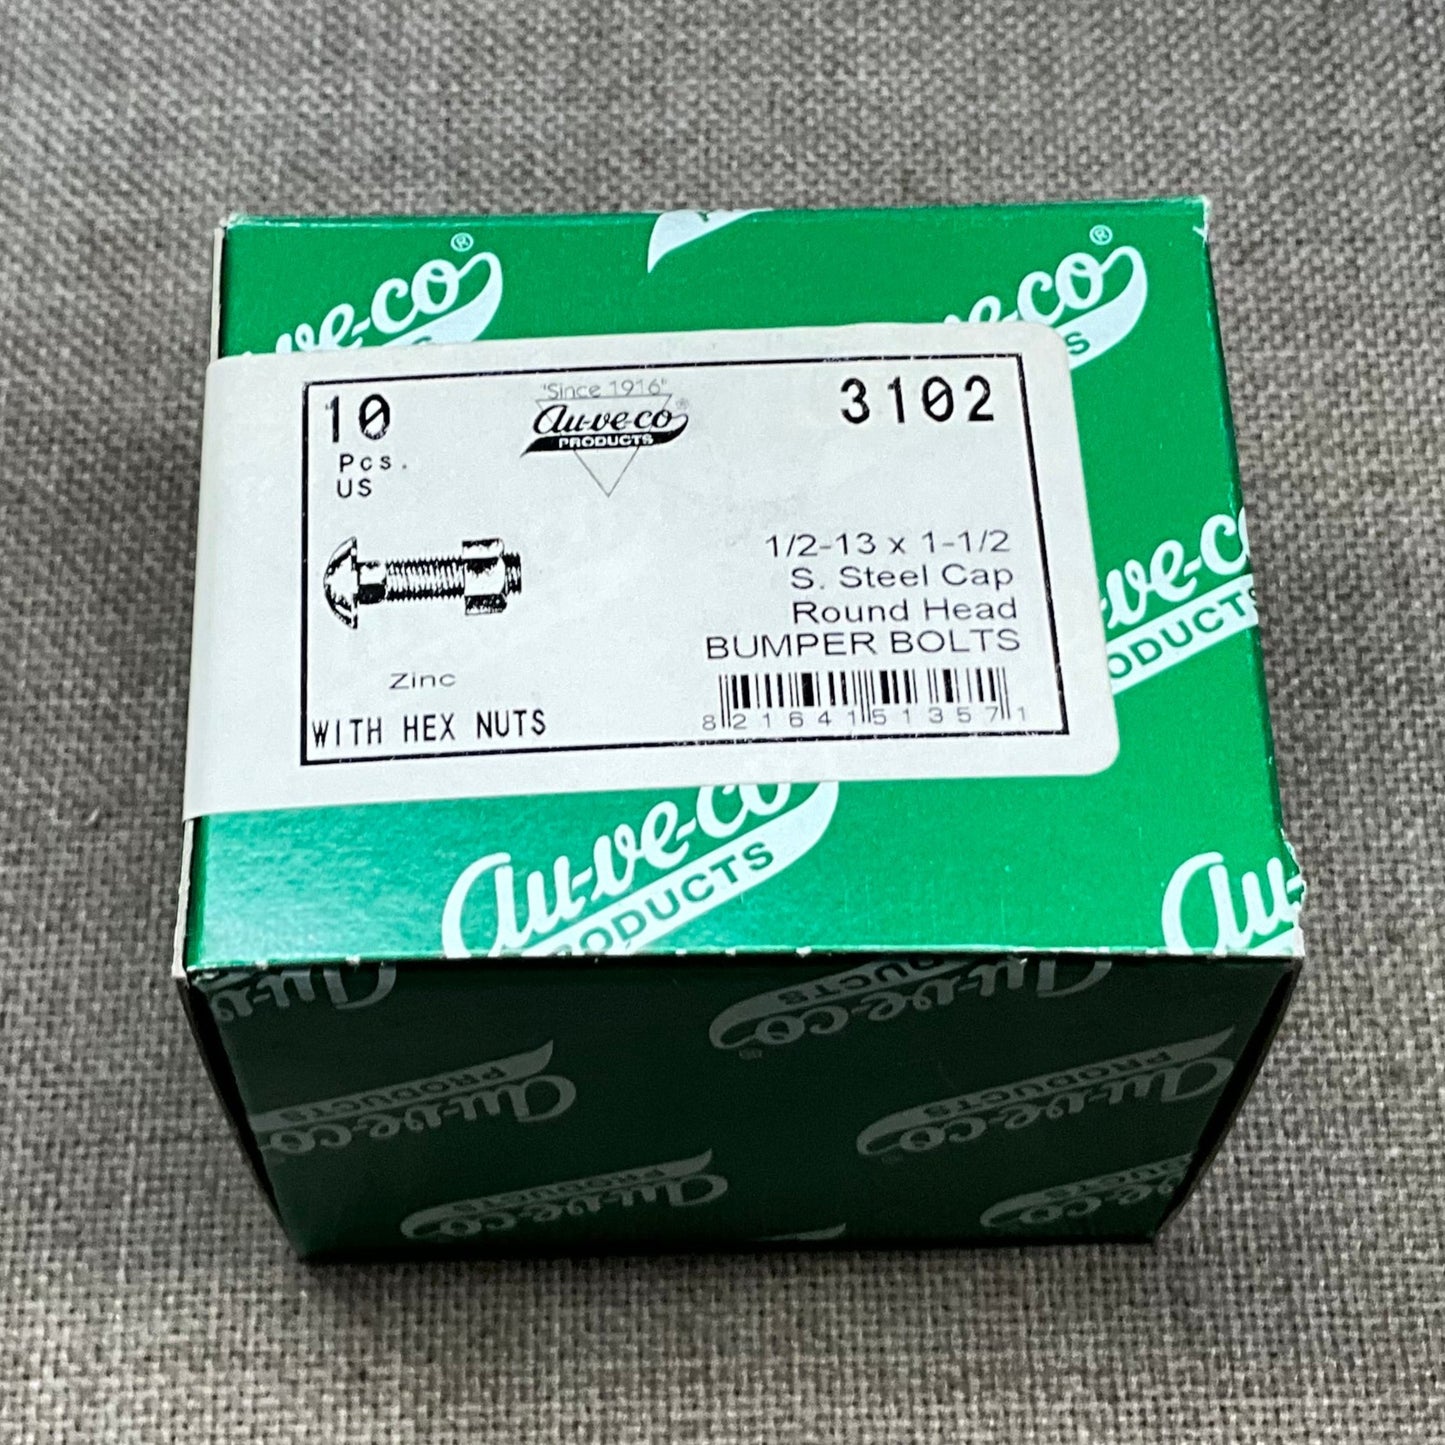 Auveco 3102 10 PC 1/2-13 X 1-1/2  S.S. Cap Zinc Bumper Bolts w/Nuts Made in USA